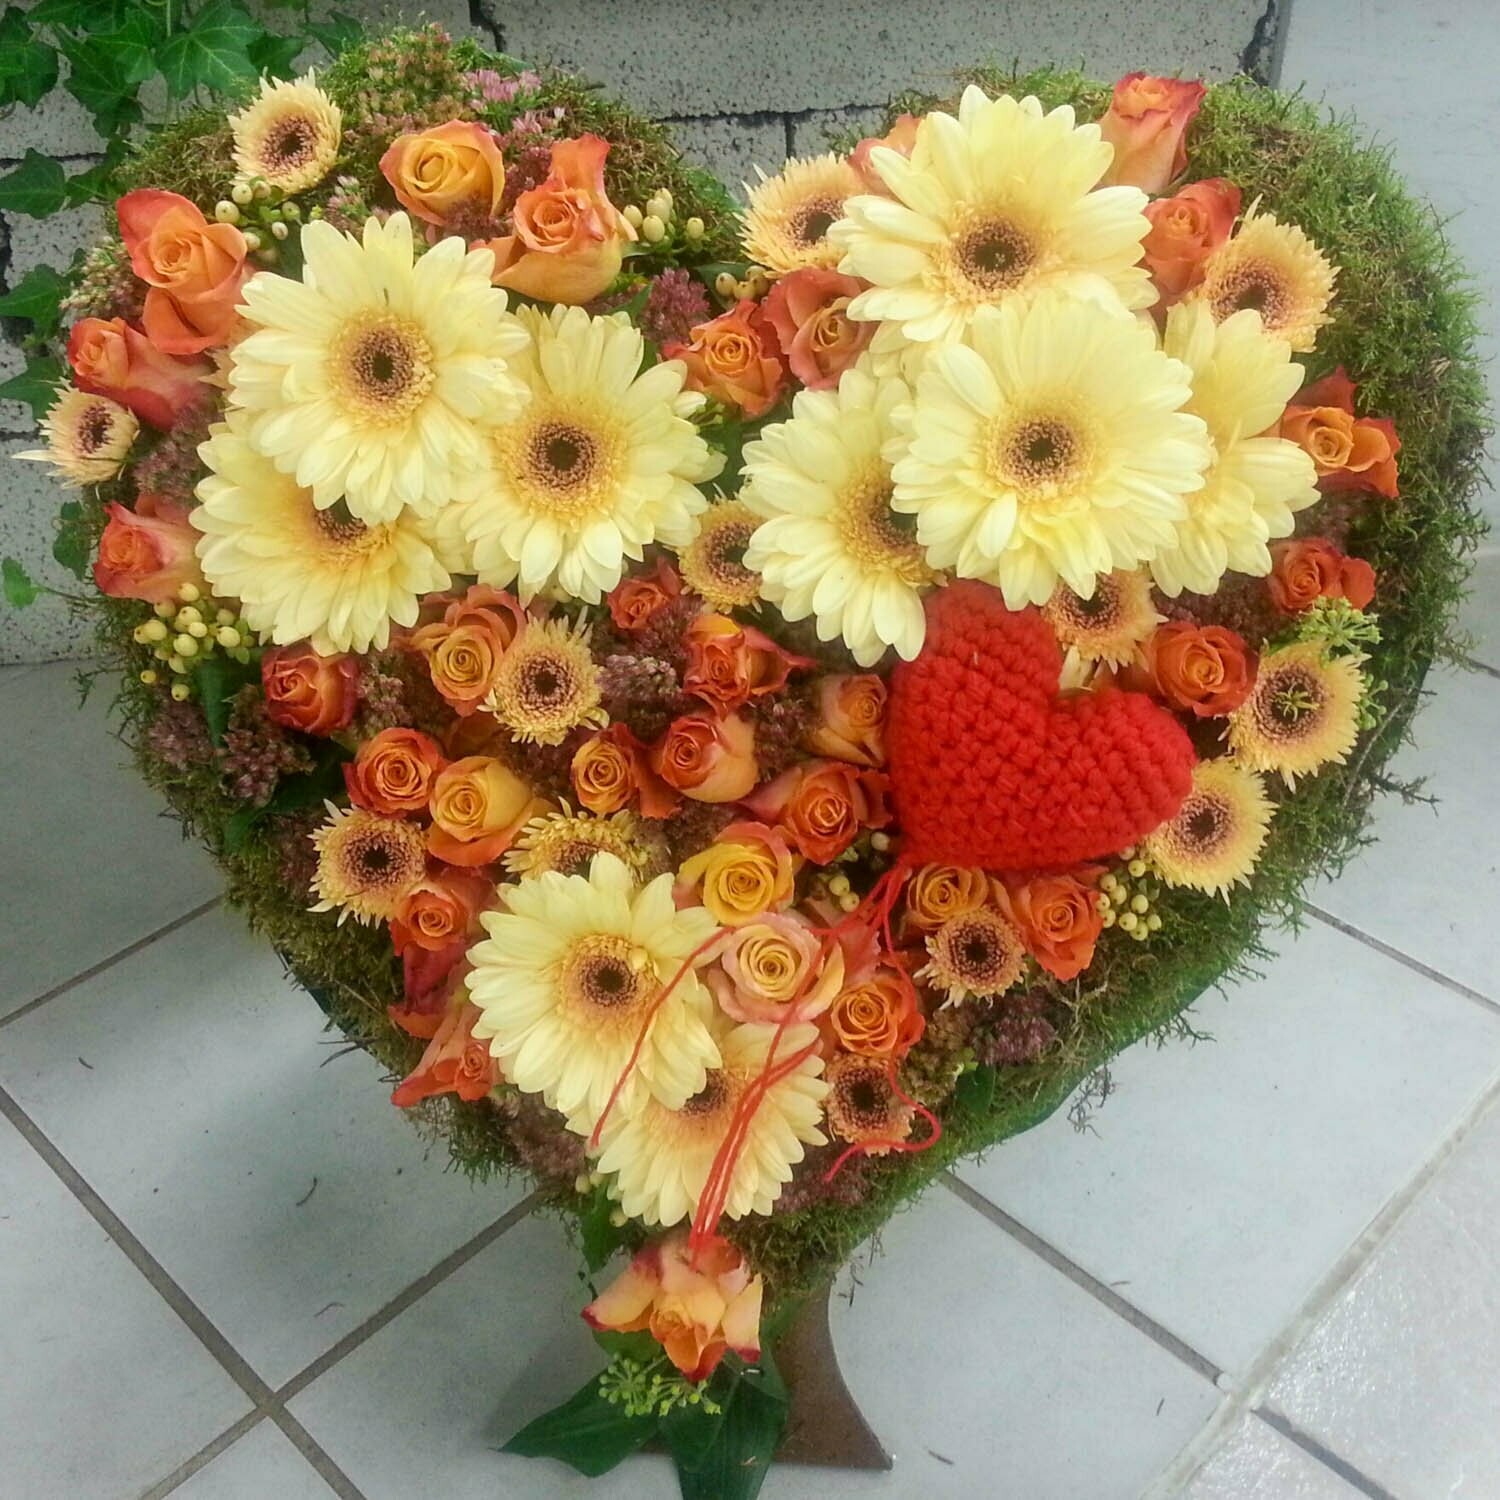 Trauer-Herz creme-orange, geschlossen mit Rosen und Gerbera, ca. 50 cm